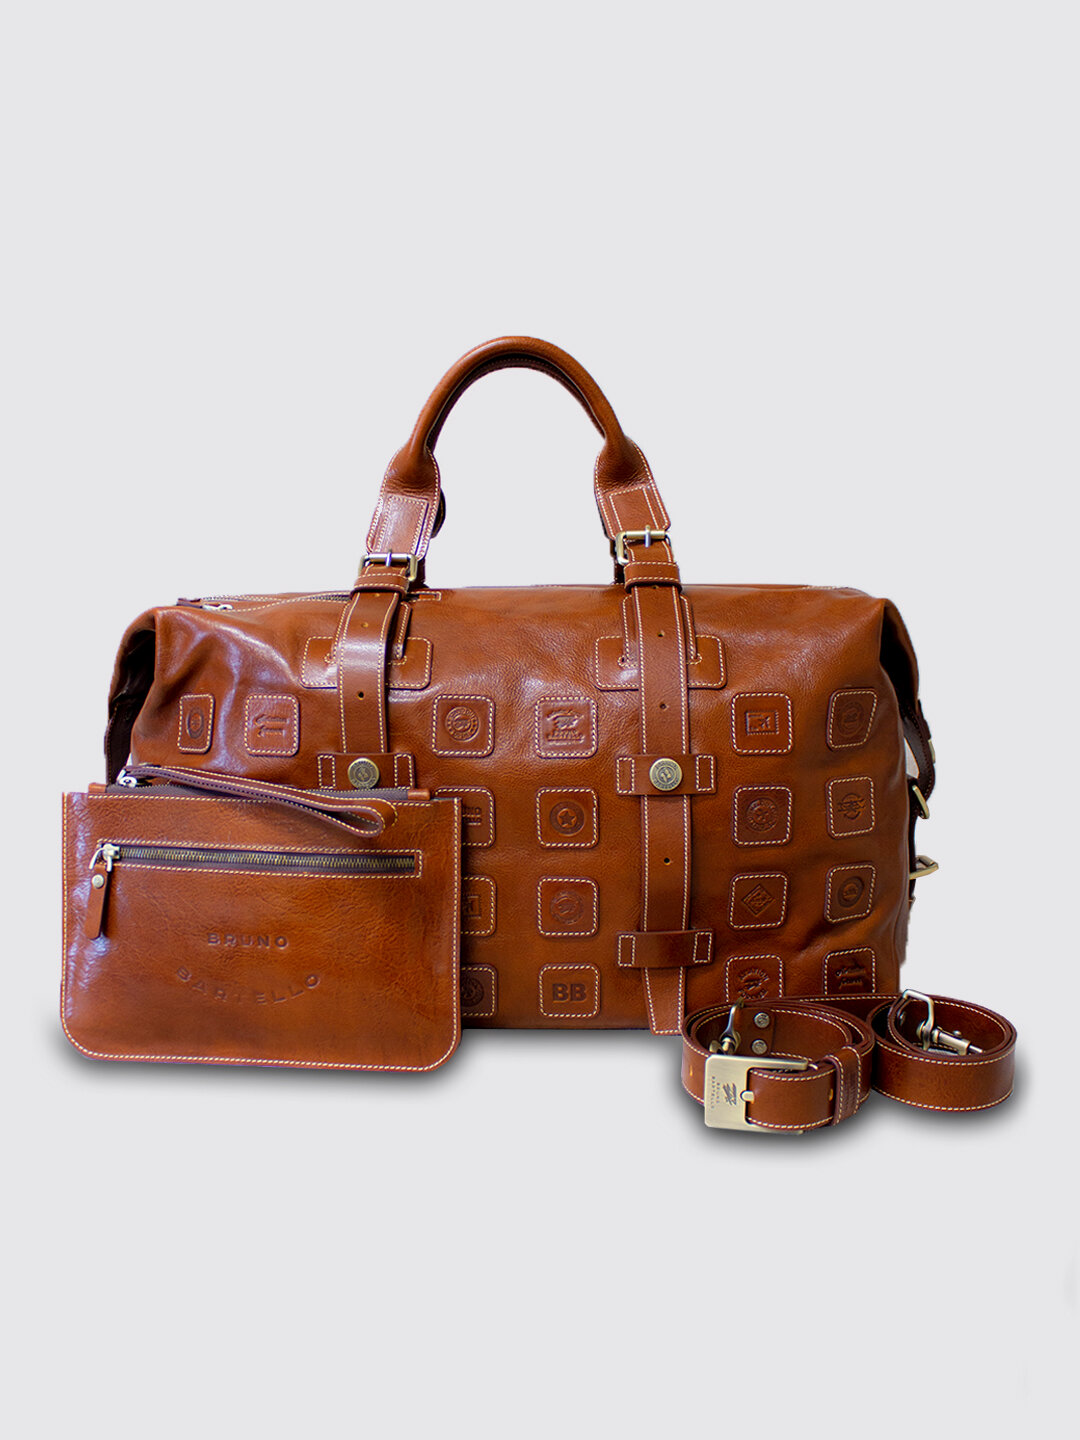 Дорожная спортивная сумка из натуральной кожи Bruno Bartello, D-0009, светло коричневая, клатч борсетка в комплекте - фотография № 1